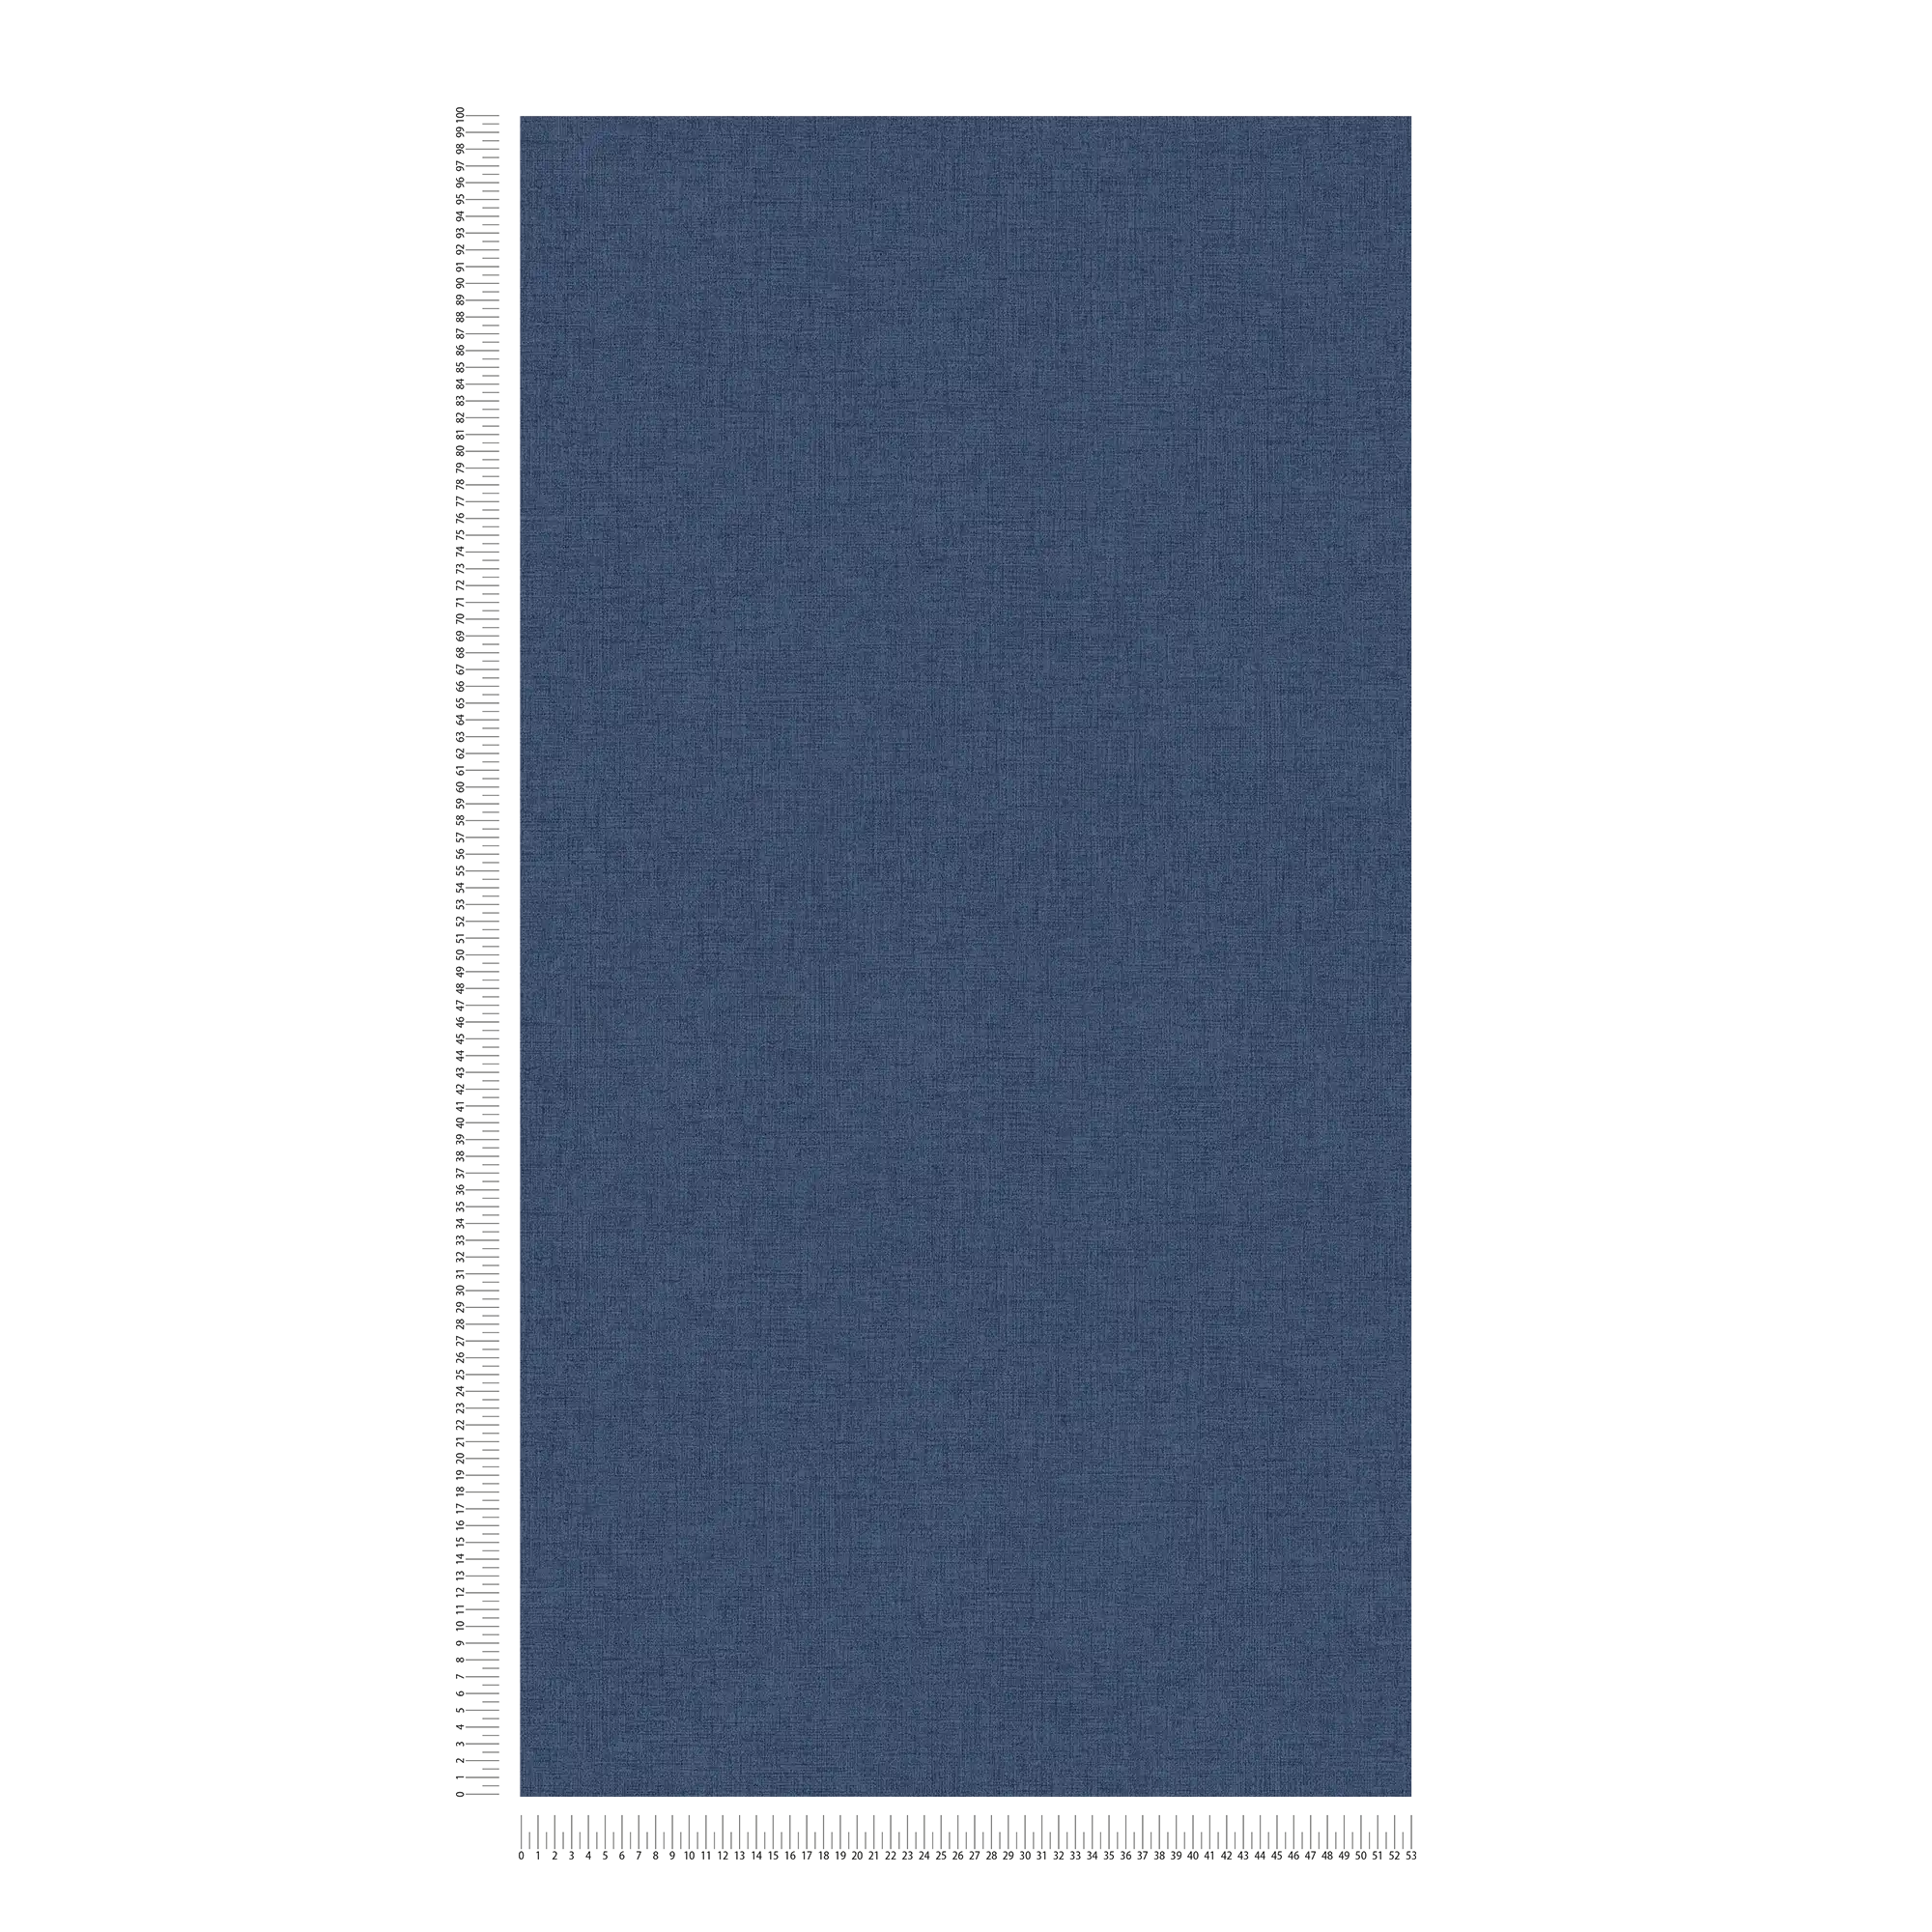             Bleu marine papier peint aspect lin, Navy - Bleu
        